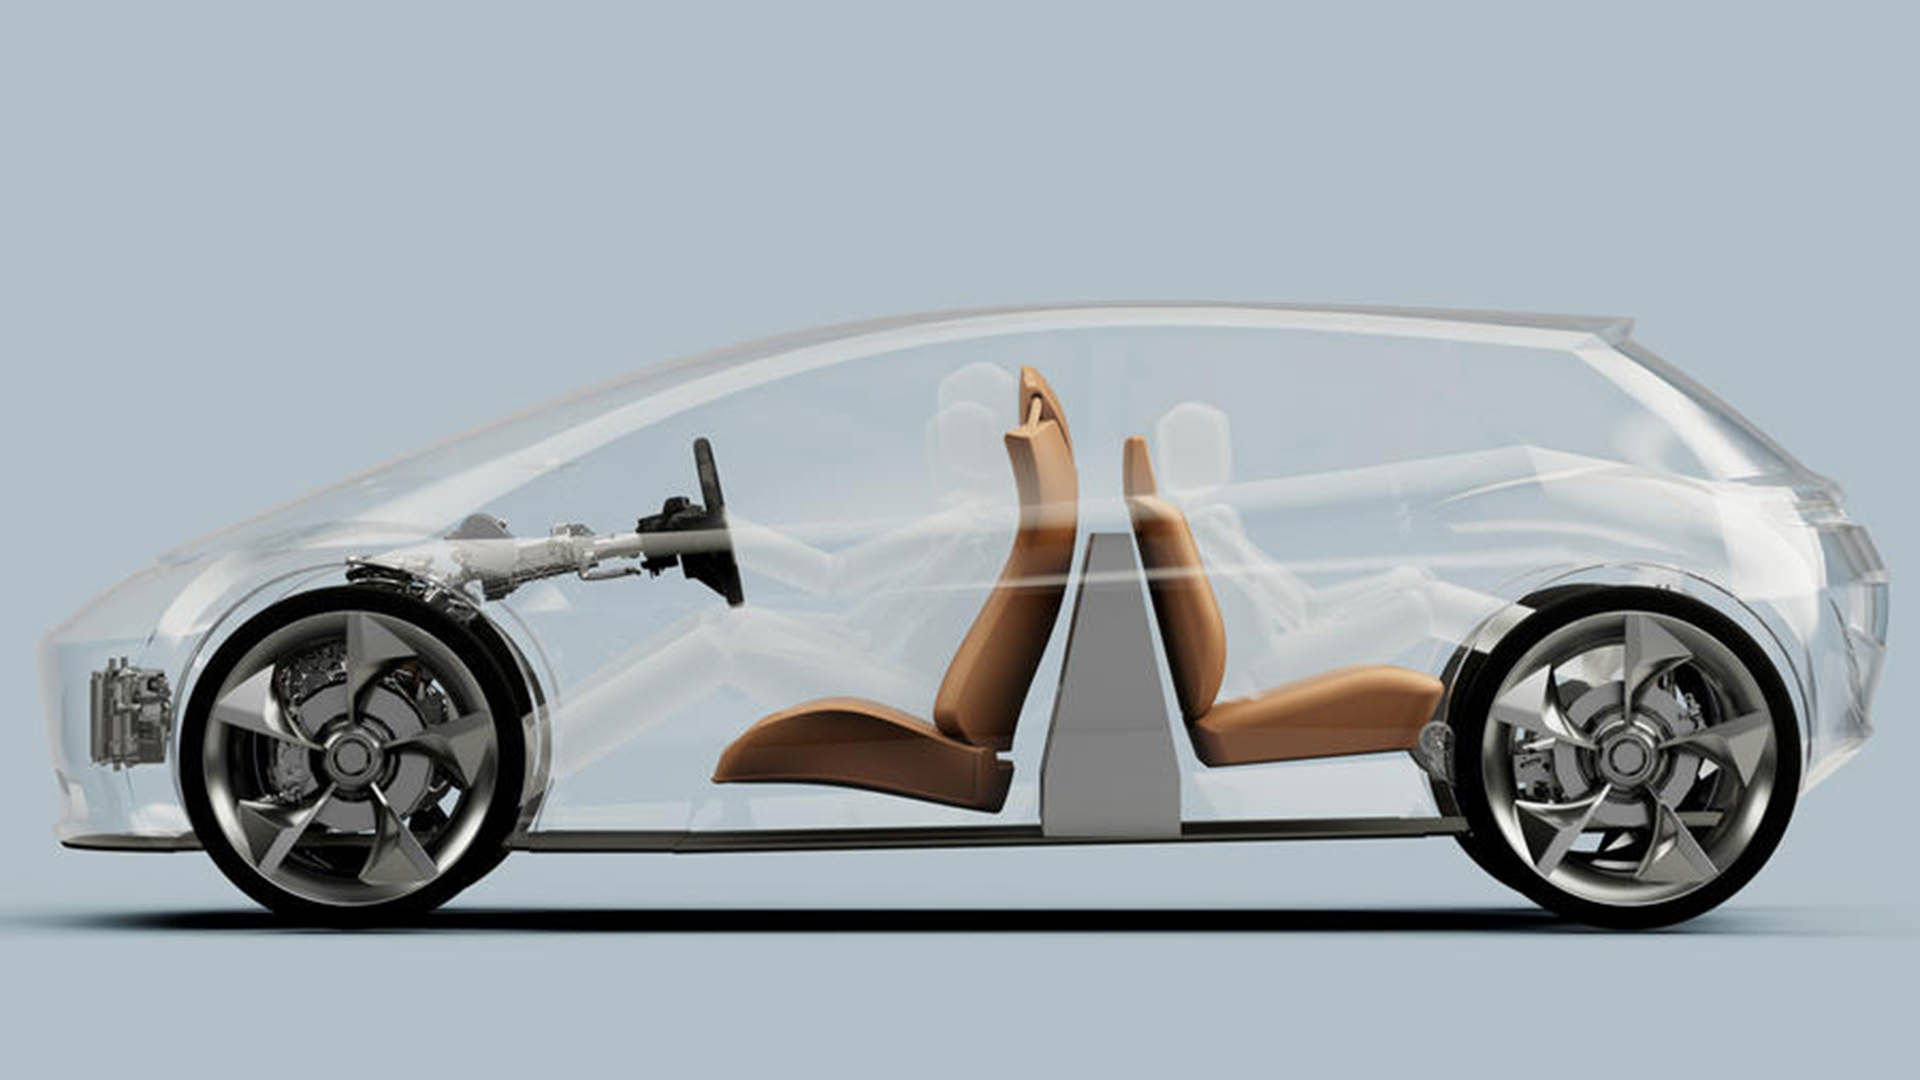 صندلی های خودروی الکتریکی مفهومی پیج رابرتس / Page-Roberts concept electric car